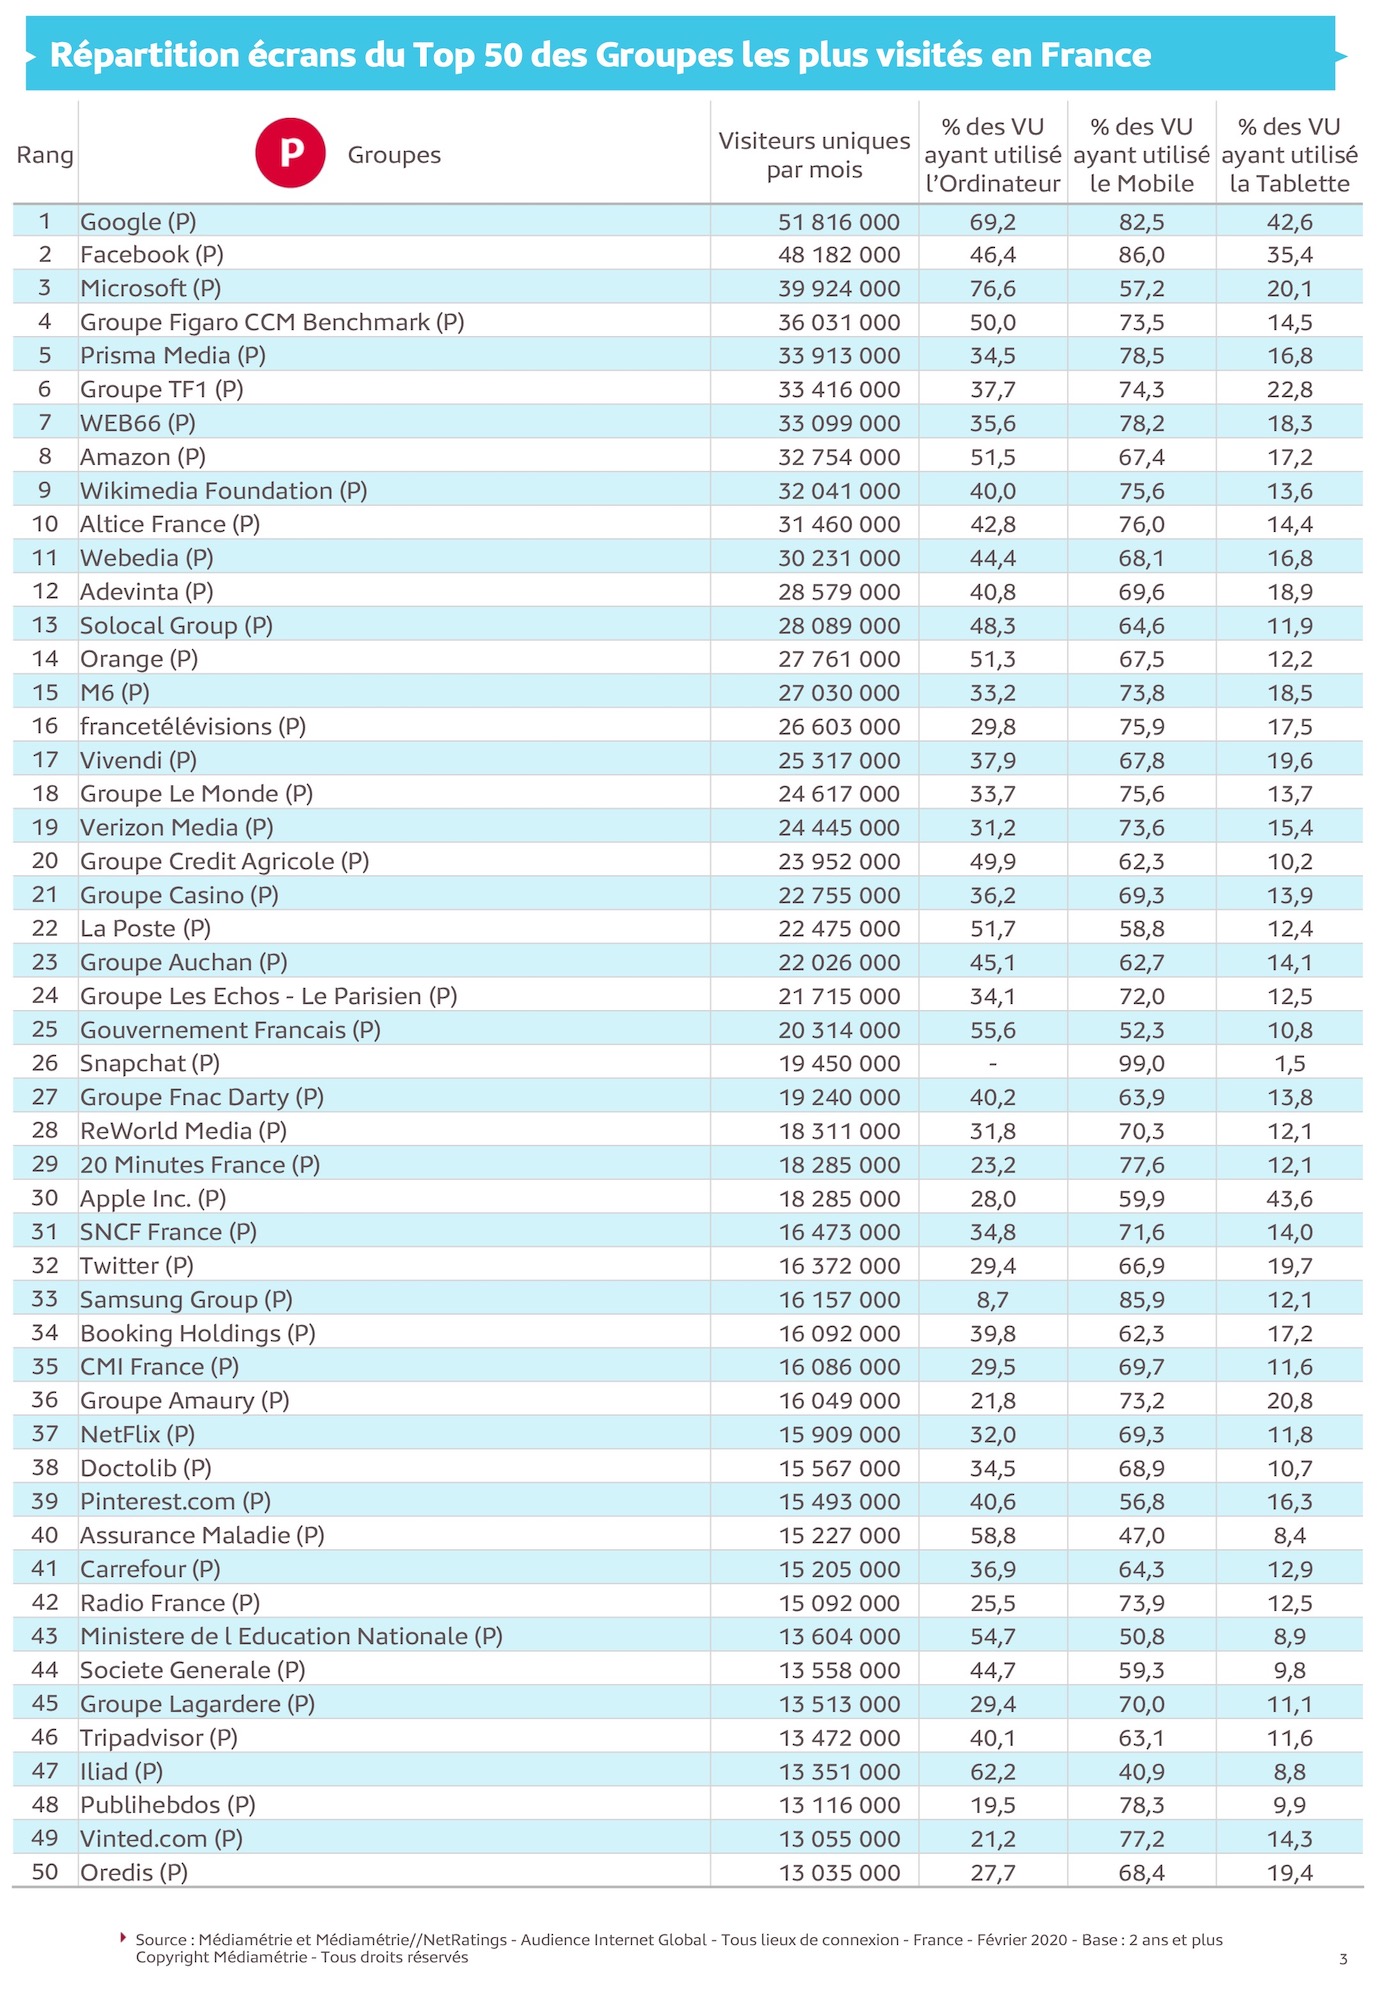 TOP50 des groupes les plus visites de france par ecran - mediametrie 2020 internet